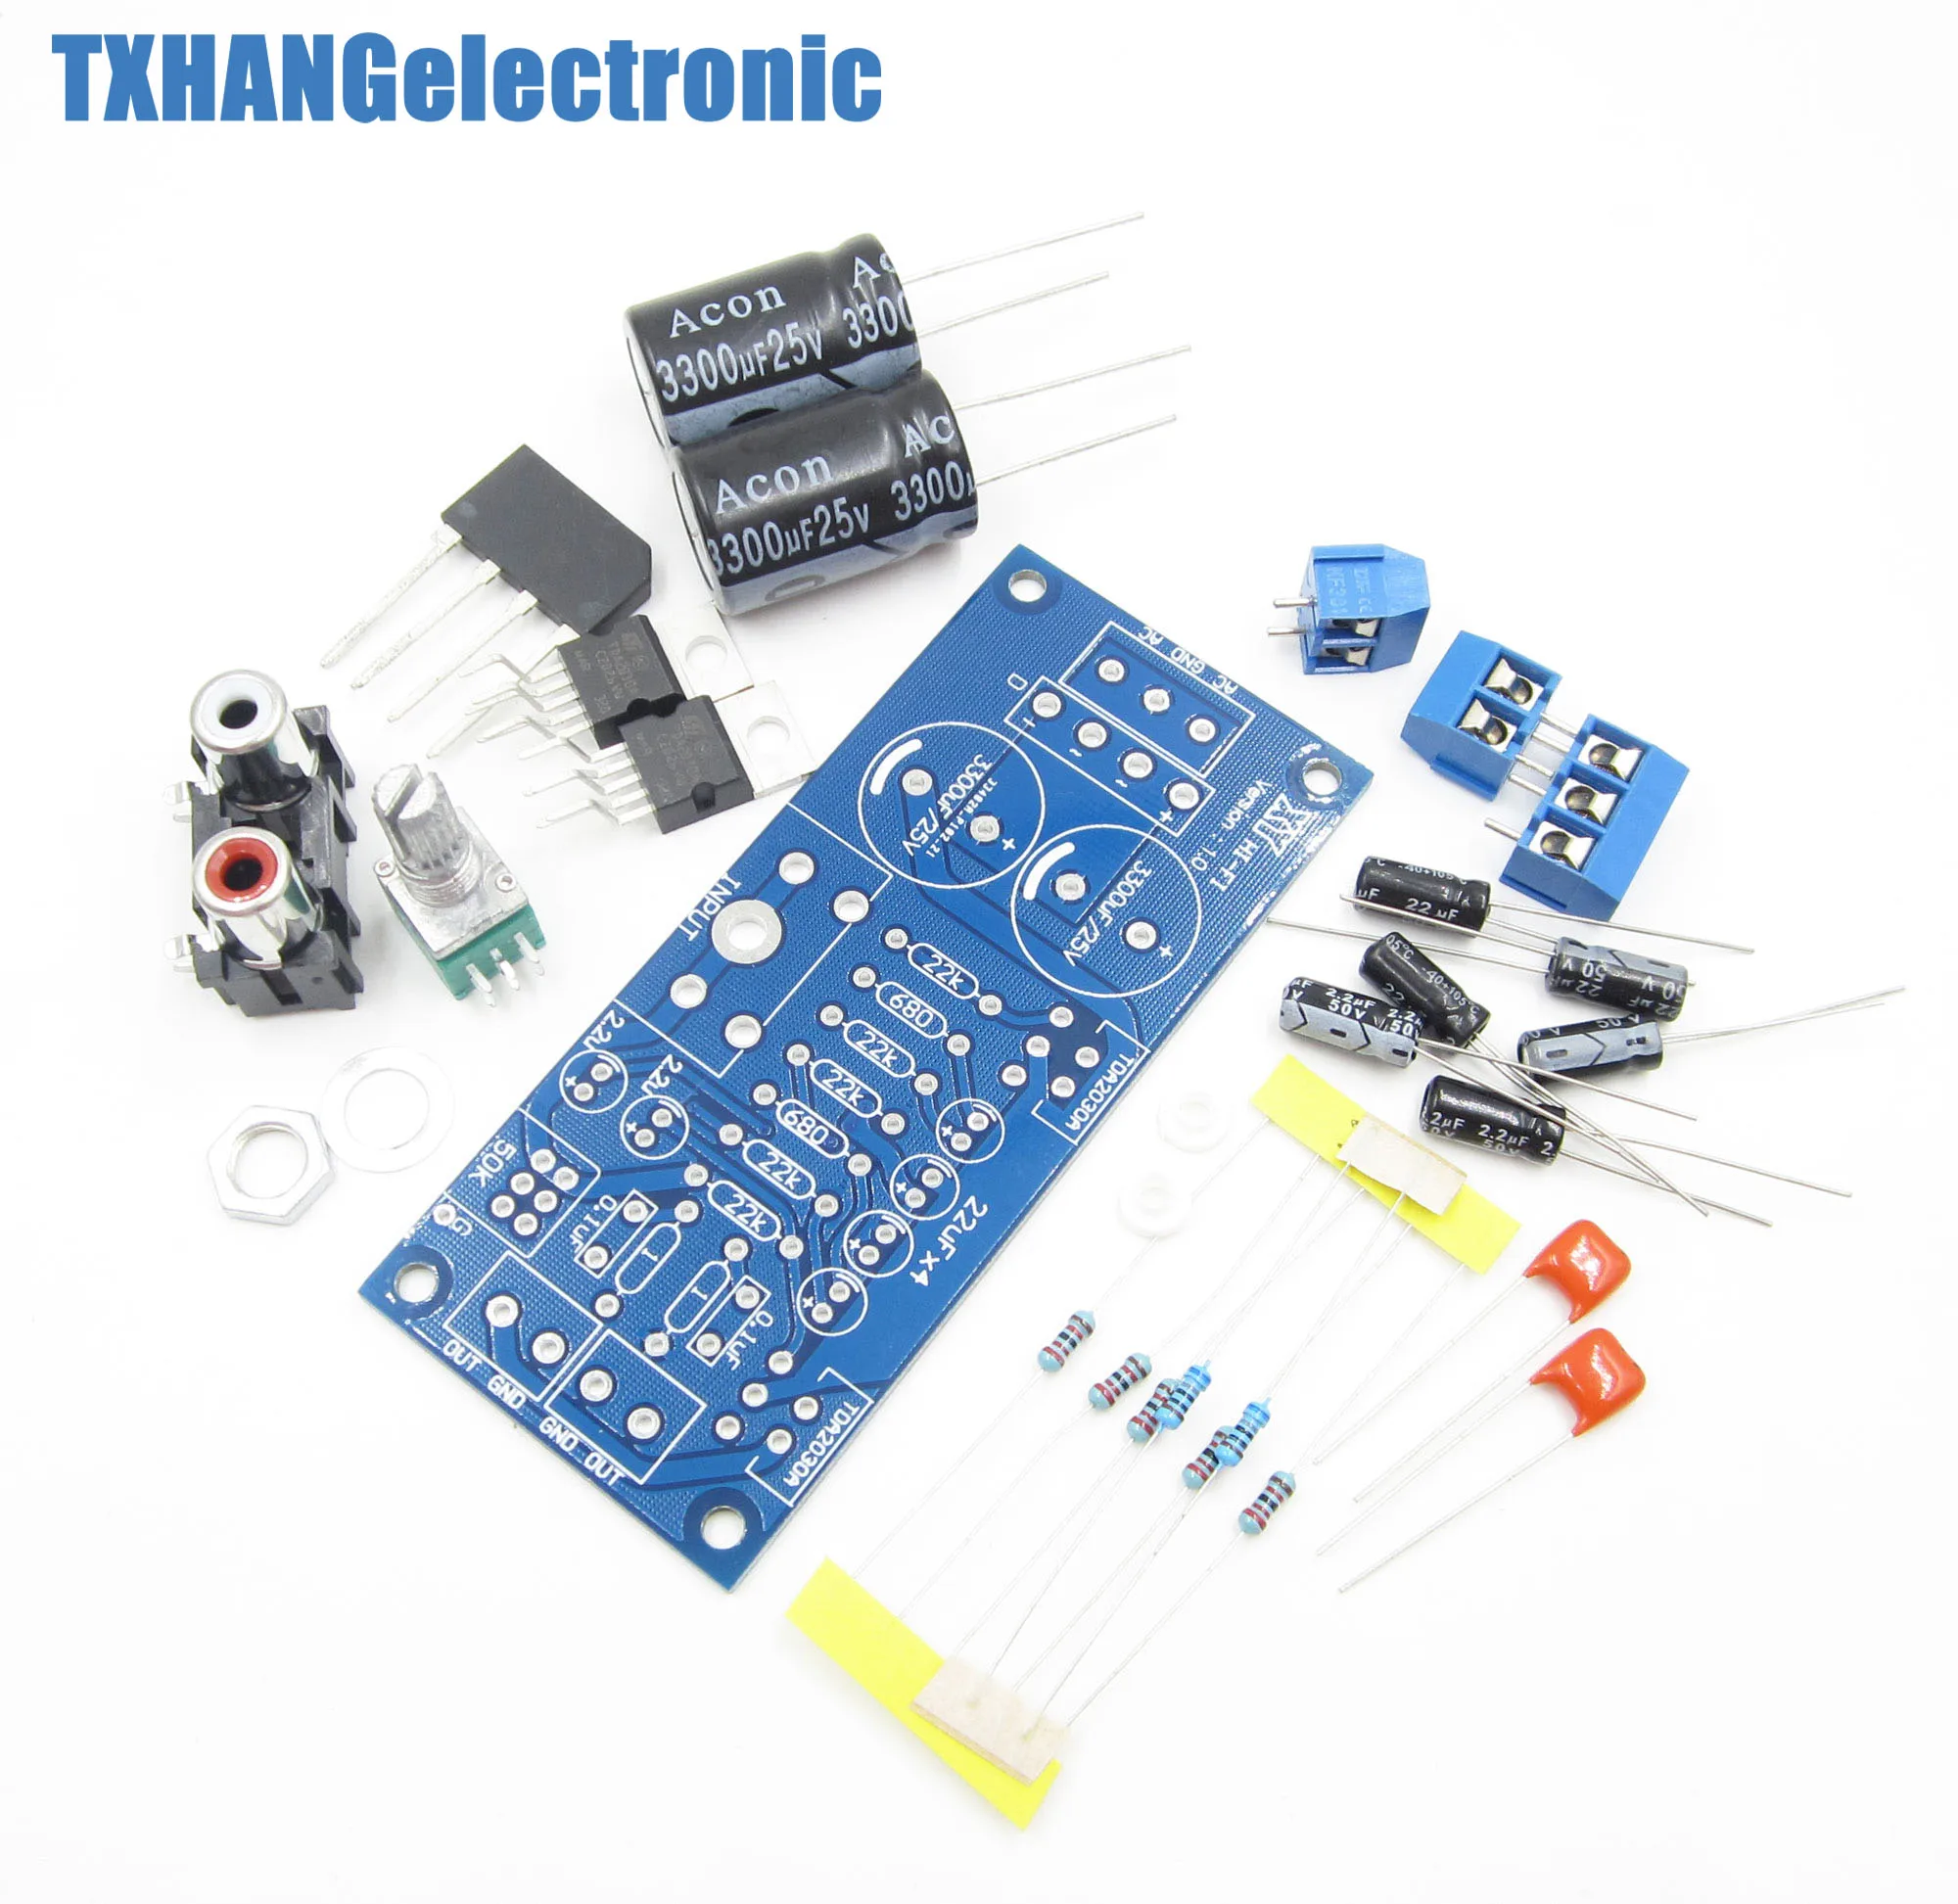 TDA2030A Audio Power Amplifier Arduino DIY Kit Components OCL 18W x 2 BTL 36W 